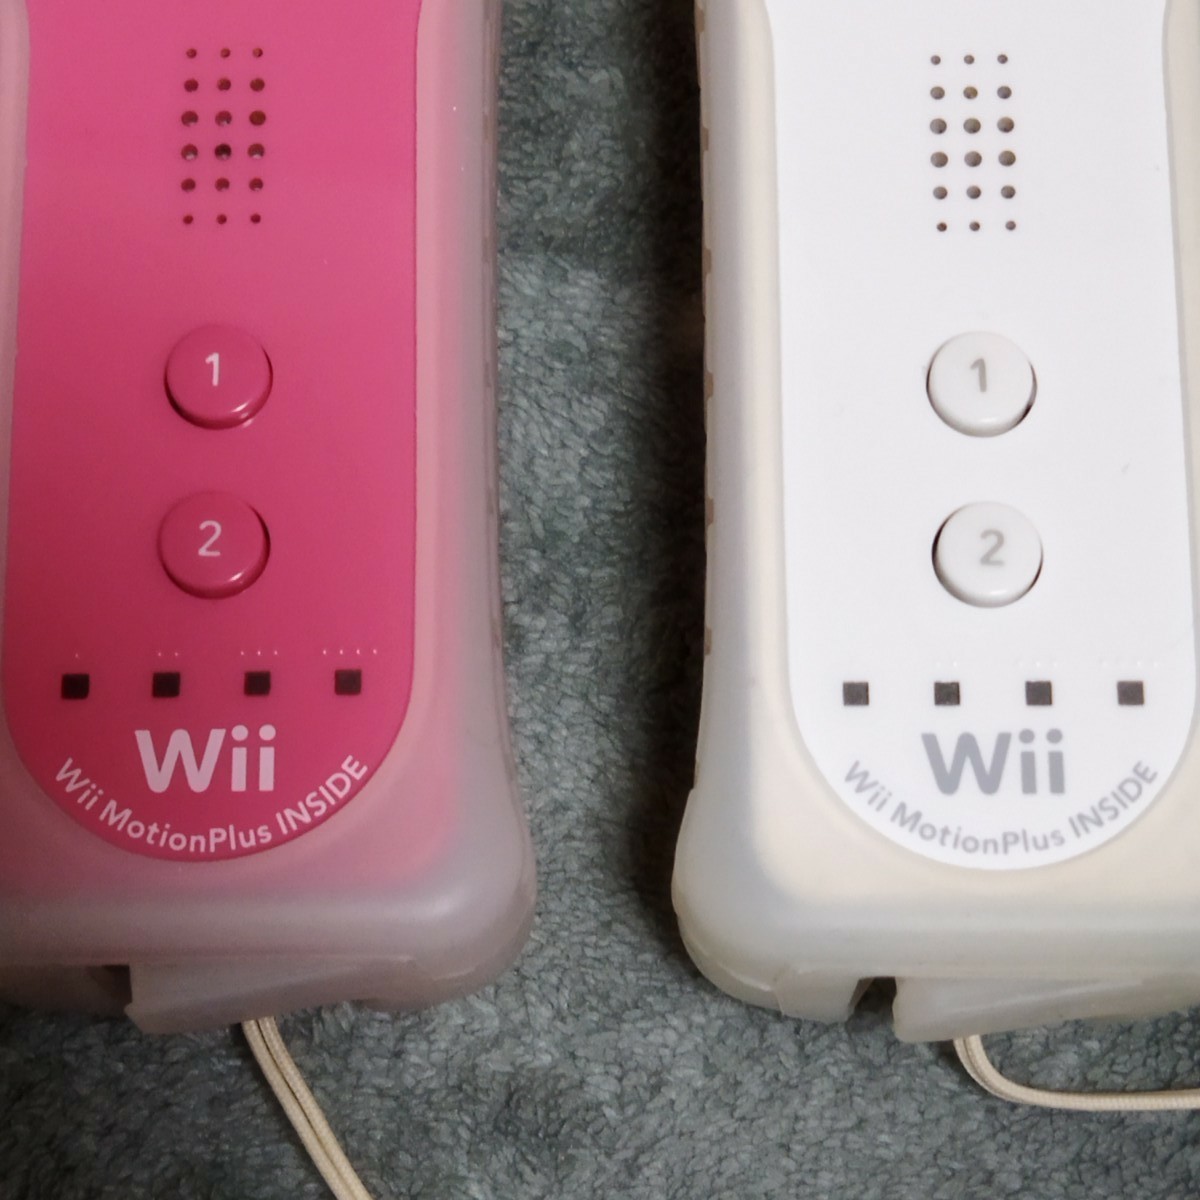 [動作確認済] Nintendo Wii ☆ソフト６本付き ☆すぐに遊べます。中古品